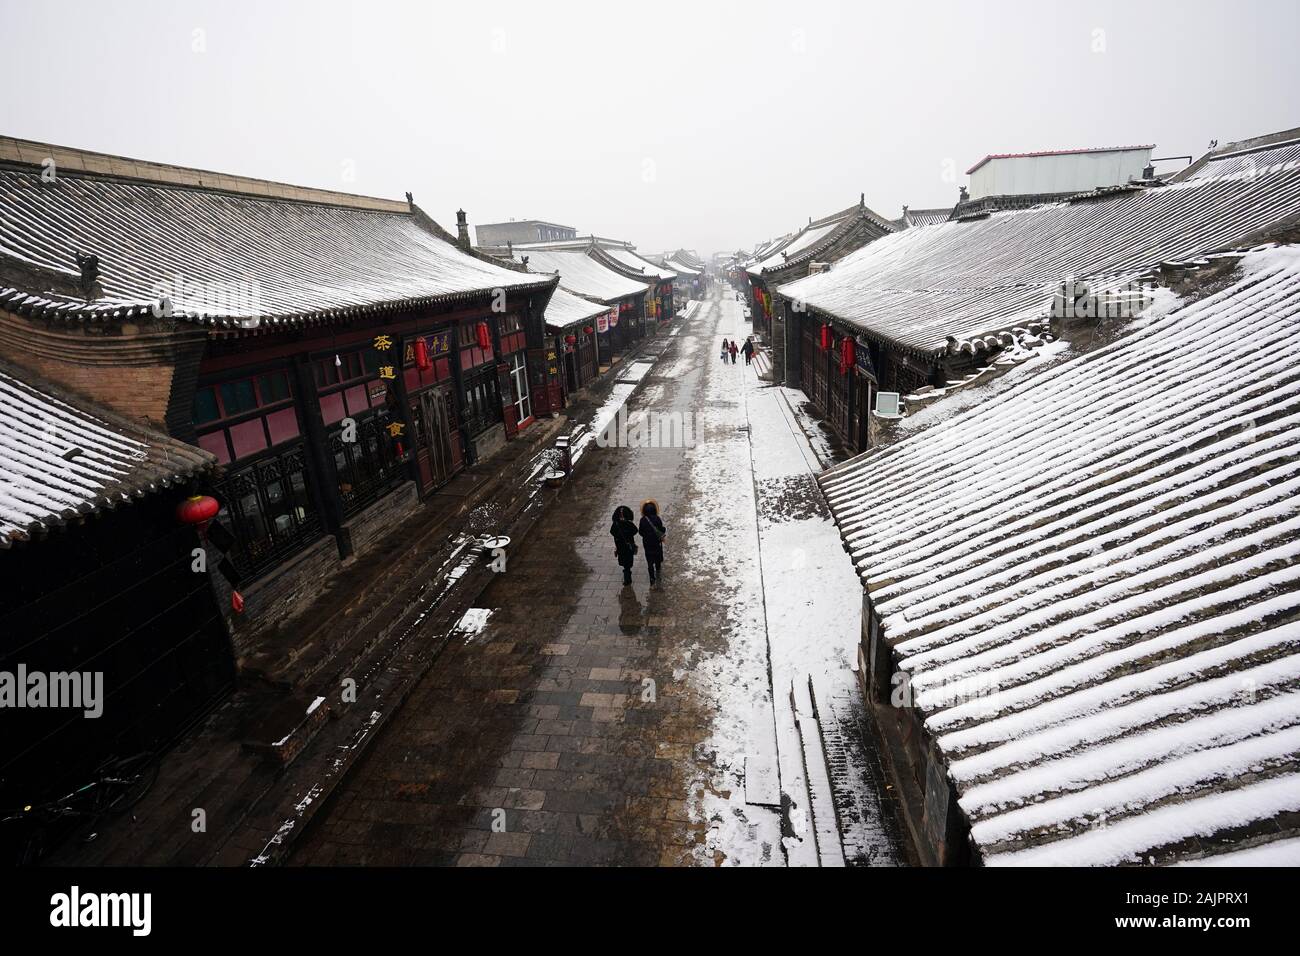 Pingyao, China. 5 de enero, 2020. Los turistas visitan nevados Pingyao Antigua ciudad en el norte de la Provincia china de Shanxi, 5 de enero de 2020. Fundada en el siglo 14, la antigua ciudad de Pingyao es un ejemplo excepcionalmente bien conservado de una ciudad chinos tradicionales, que fue nombrada Patrimonio de la Humanidad por la UNESCO en 1997. Crédito: Zhan Yan/Xinhua/Alamy Live News Foto de stock